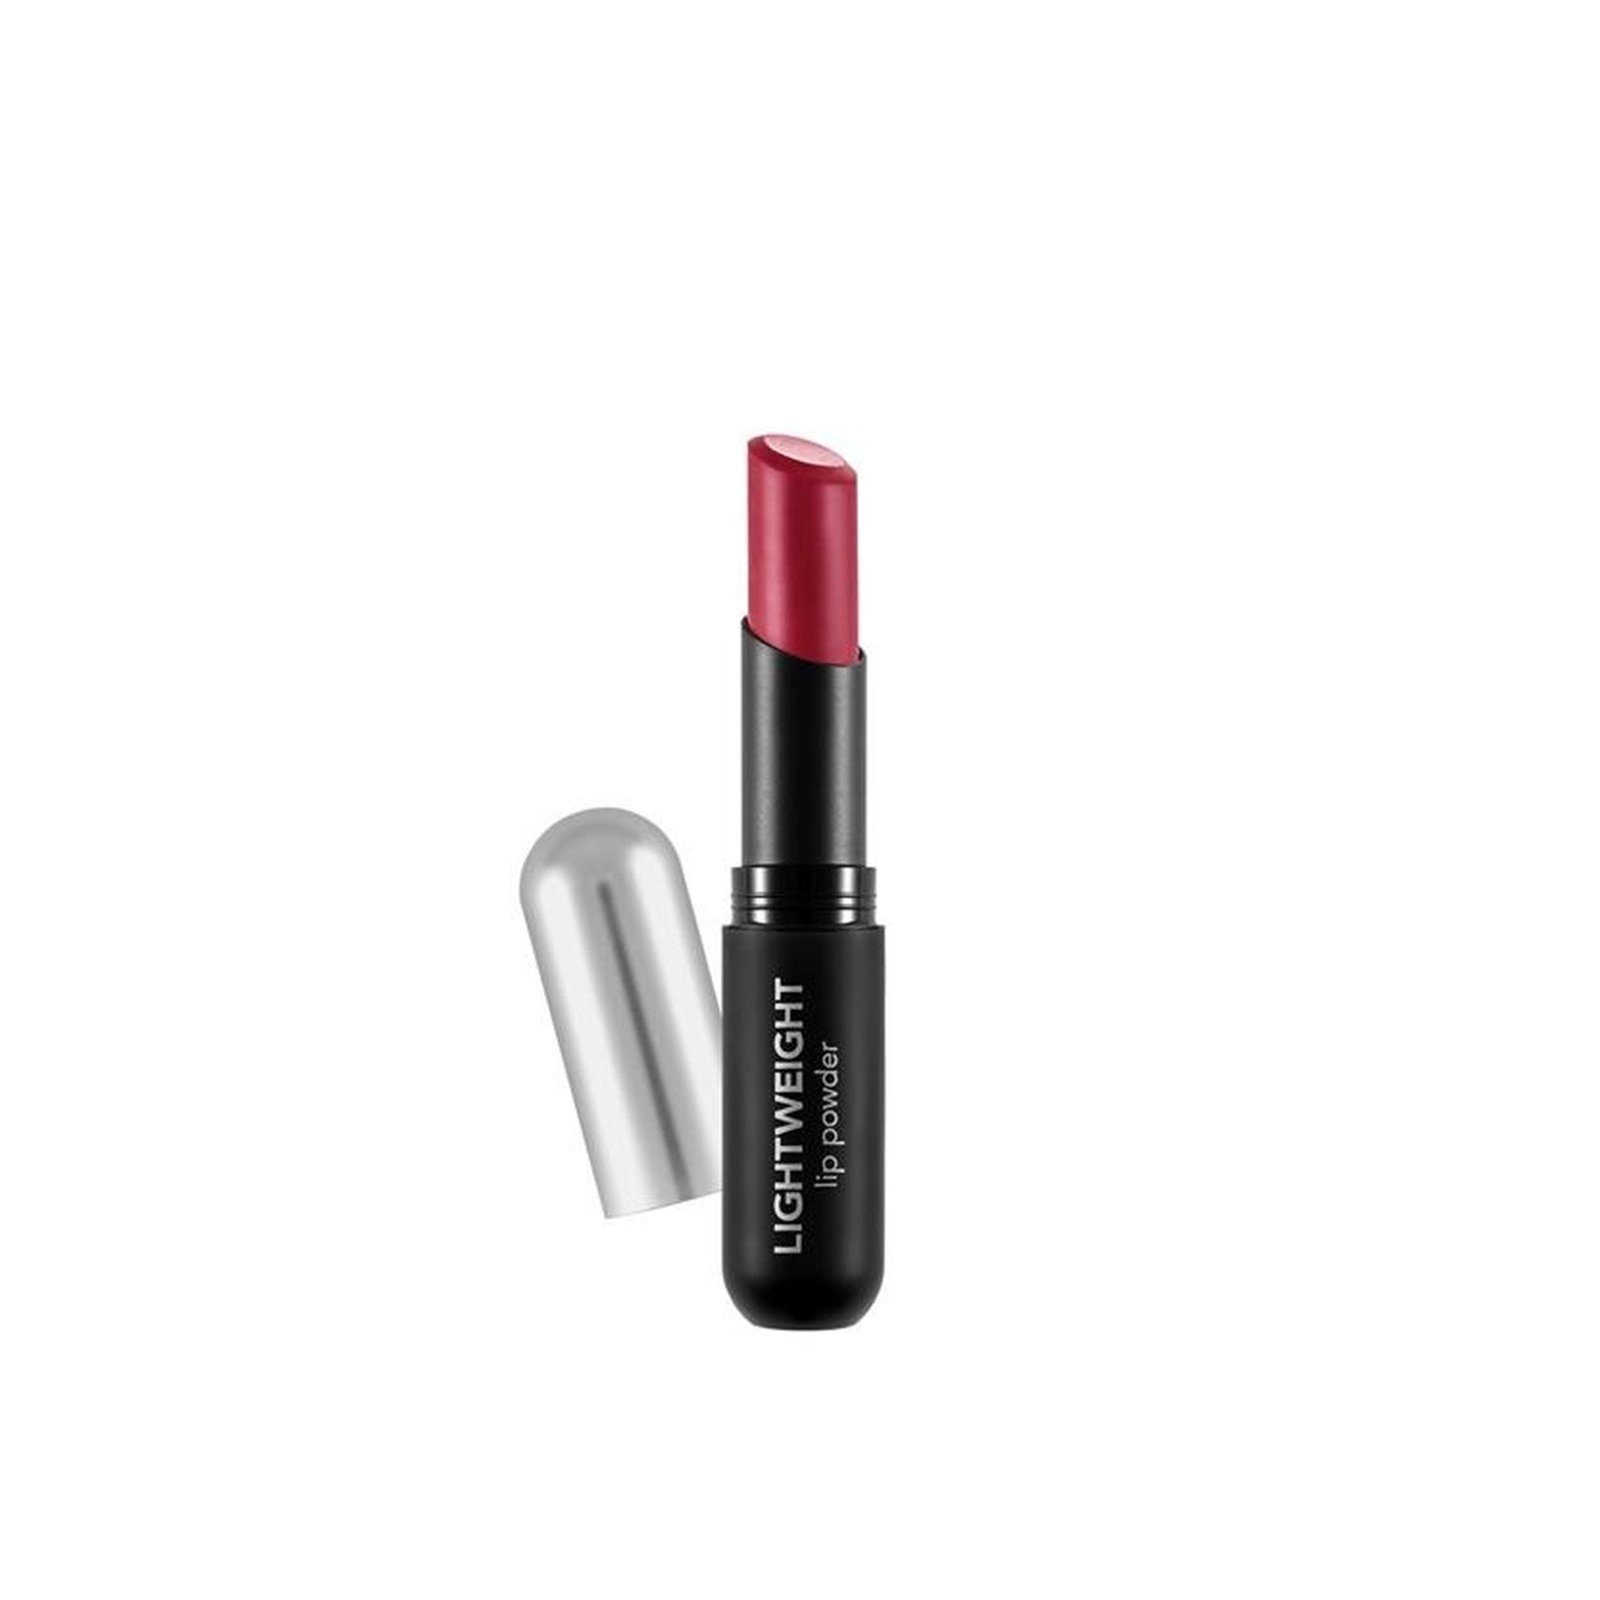 Flormar Lightweight Lip Powder Ultra Light Lipstick 012 Legendary Red 3g (0.10oz)